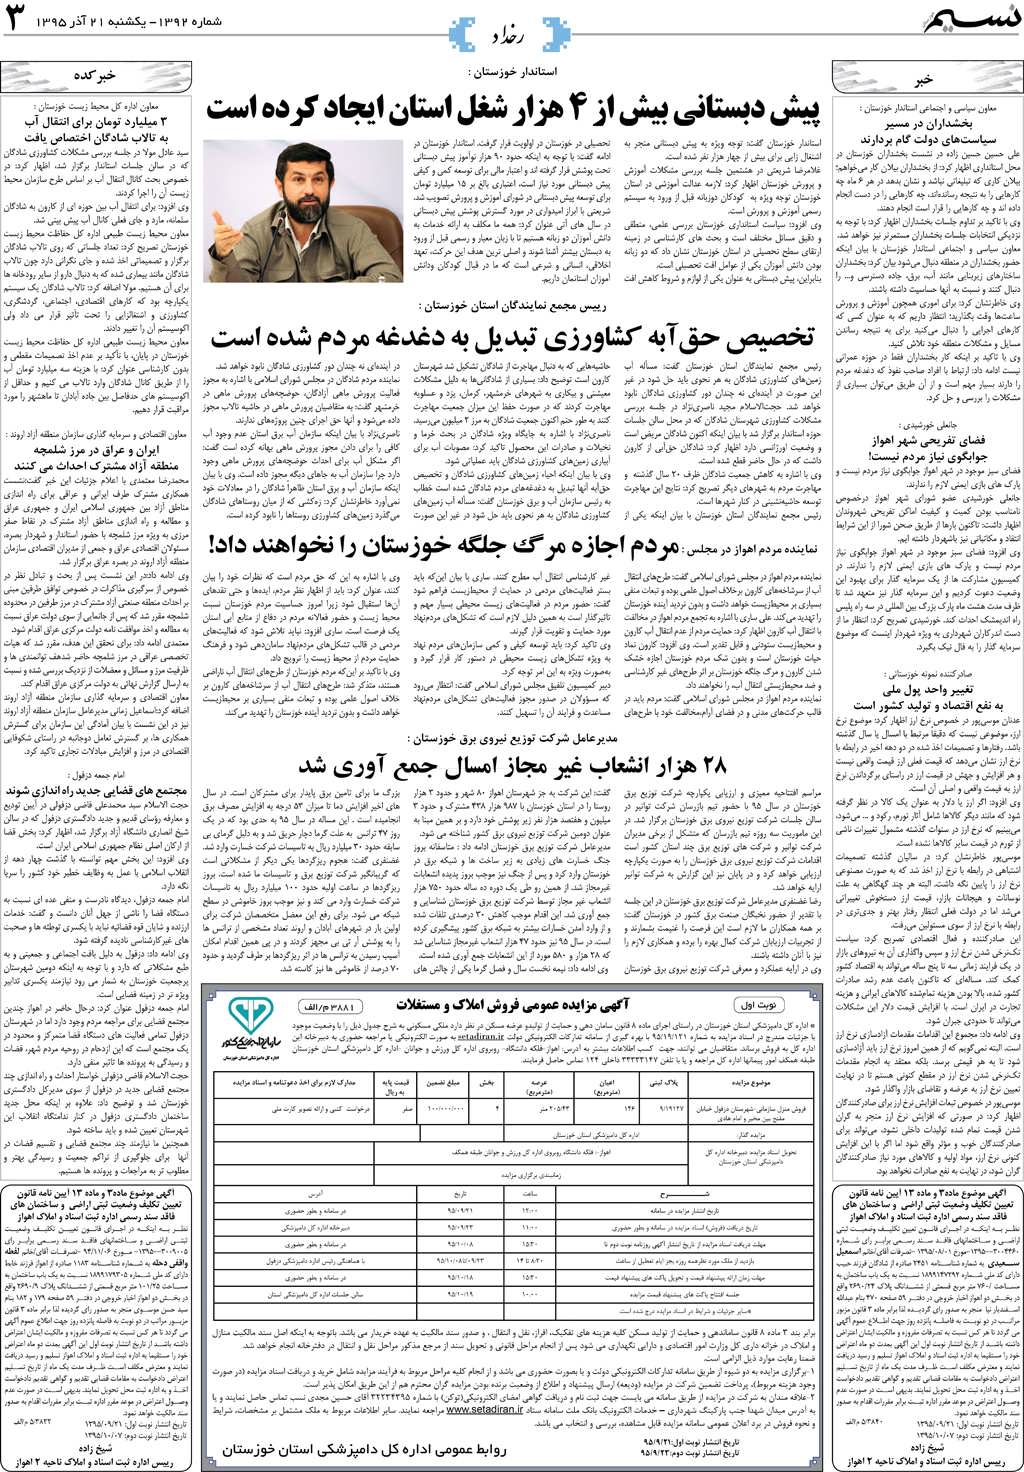 صفحه رخداد روزنامه نسیم شماره 1392